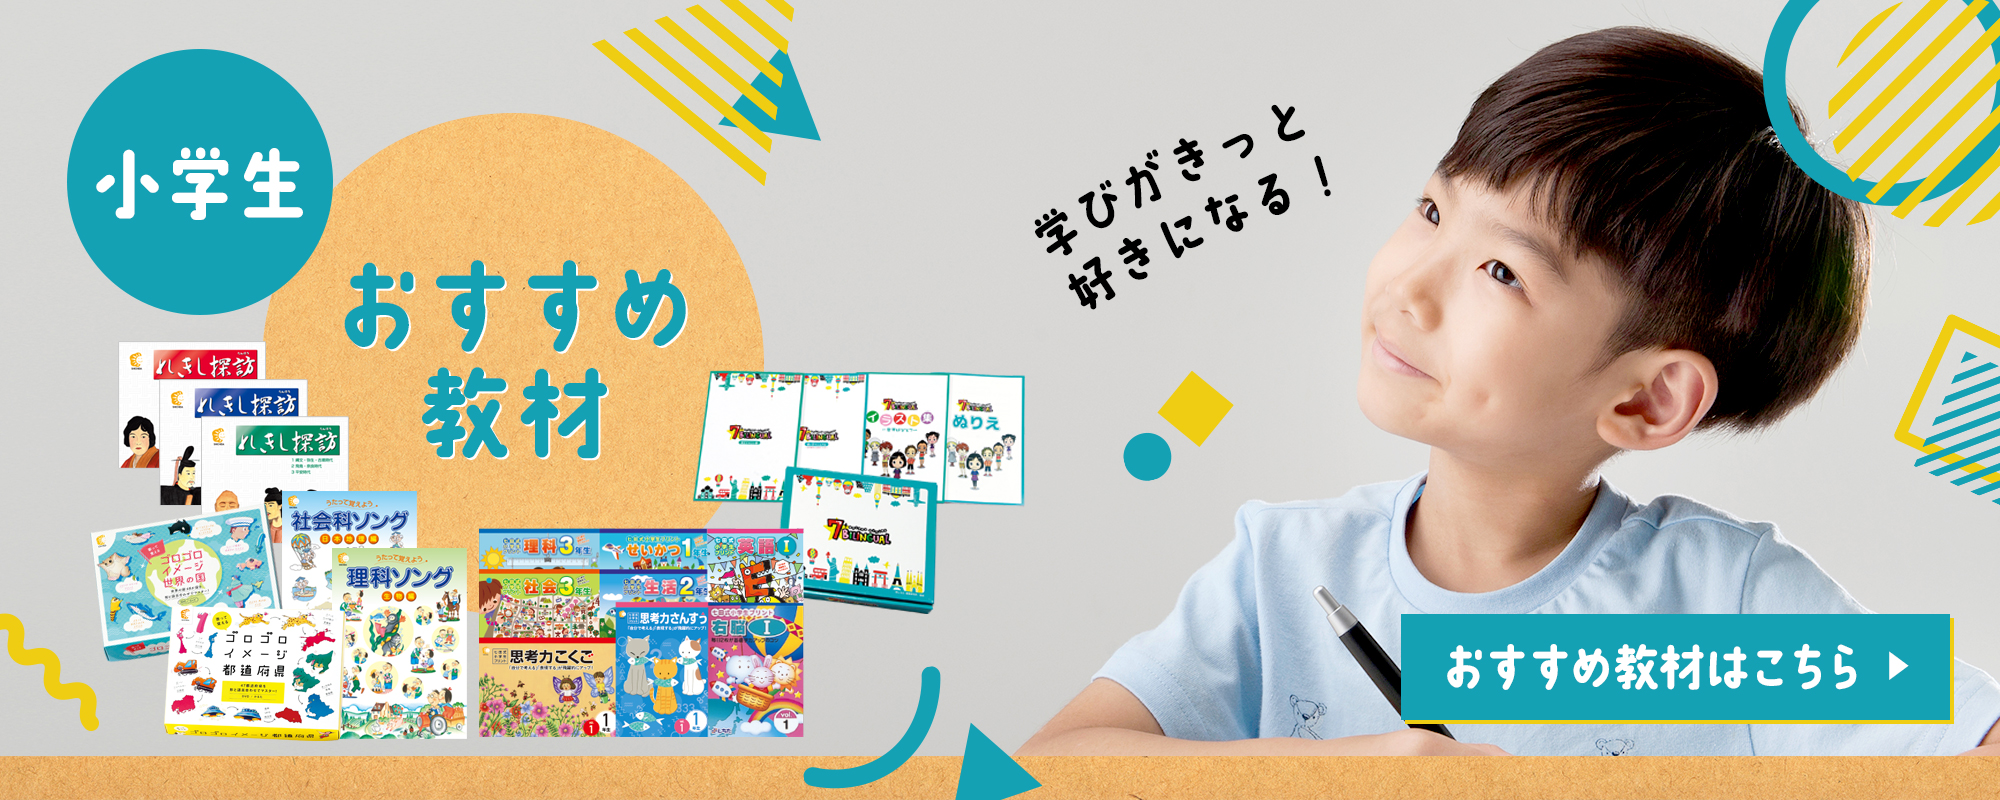 七田式オフィシャルストア - 幼児・小学生向け教材の公式通販